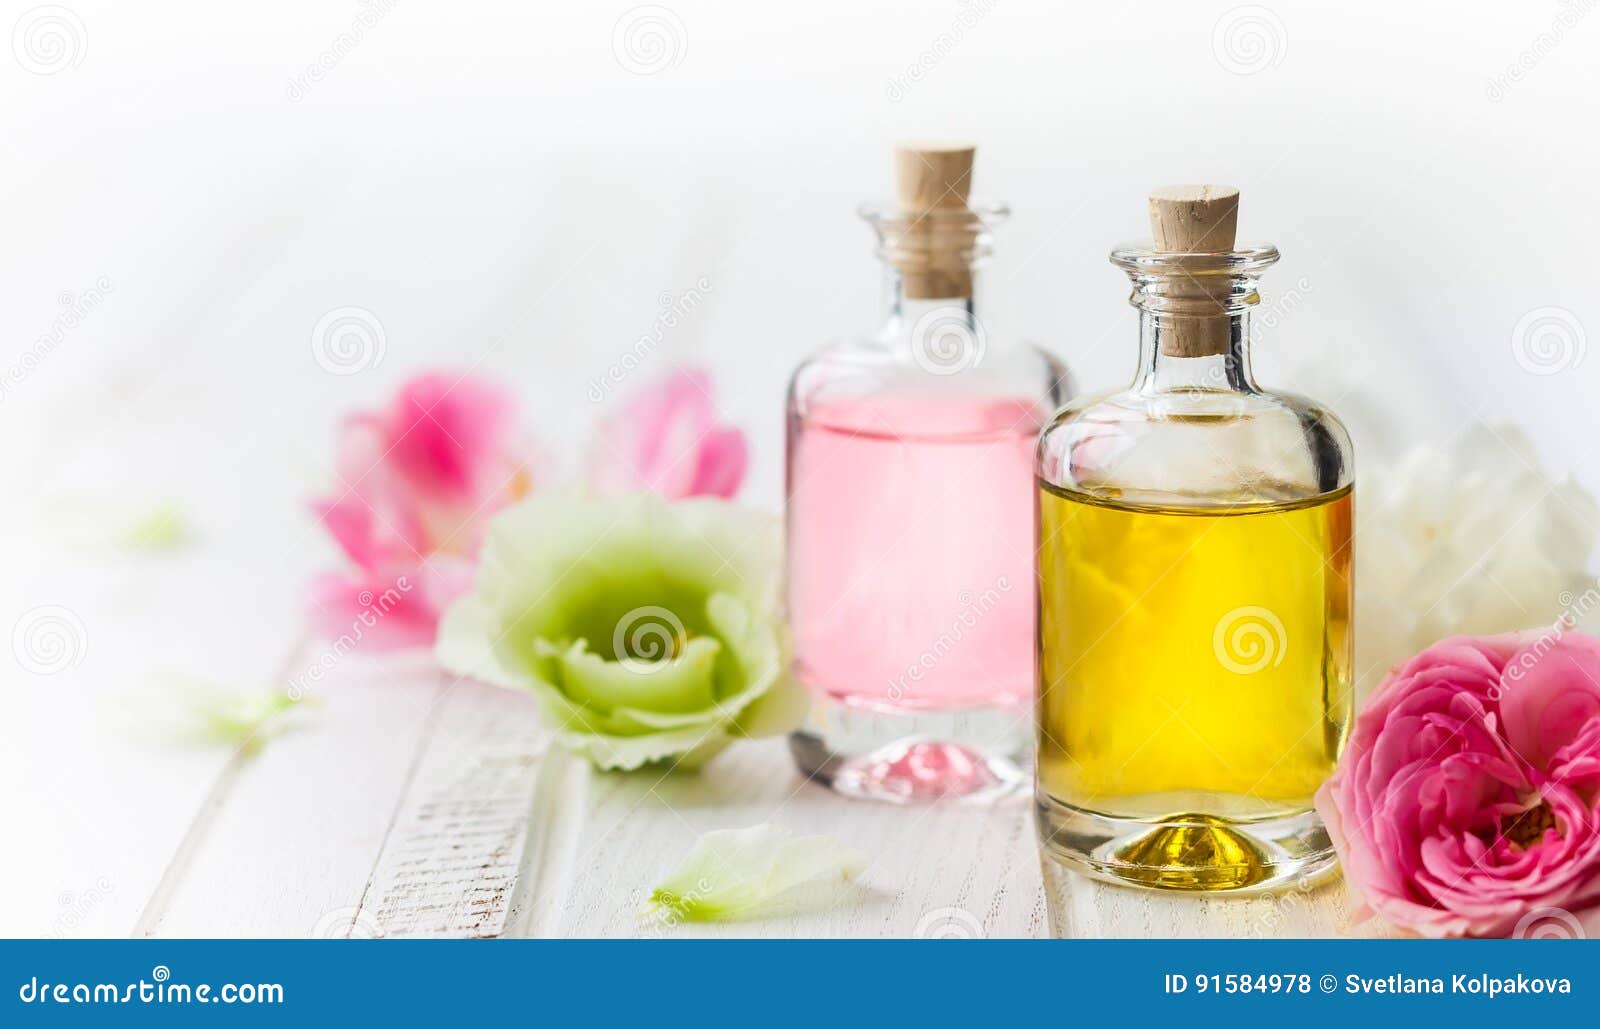 essential aroma oil